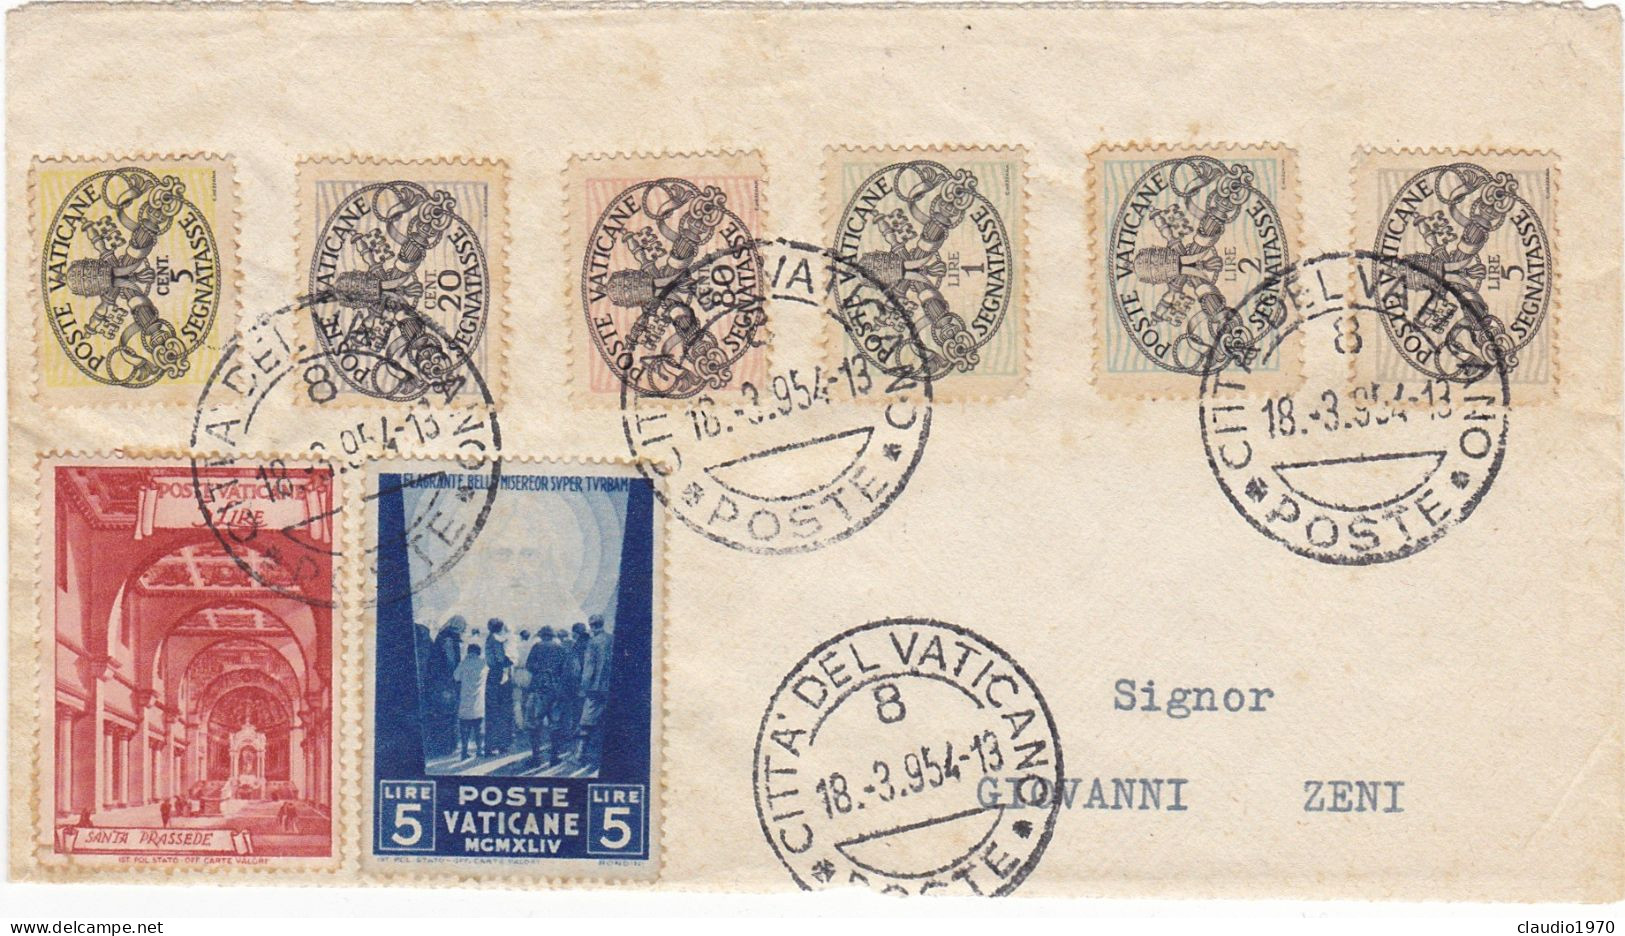 CITTA' DEL VATICANO - ROMA - BUSTA - VIAGGIATA PER SENIGALLIA (ANCONA) 1954 - Covers & Documents